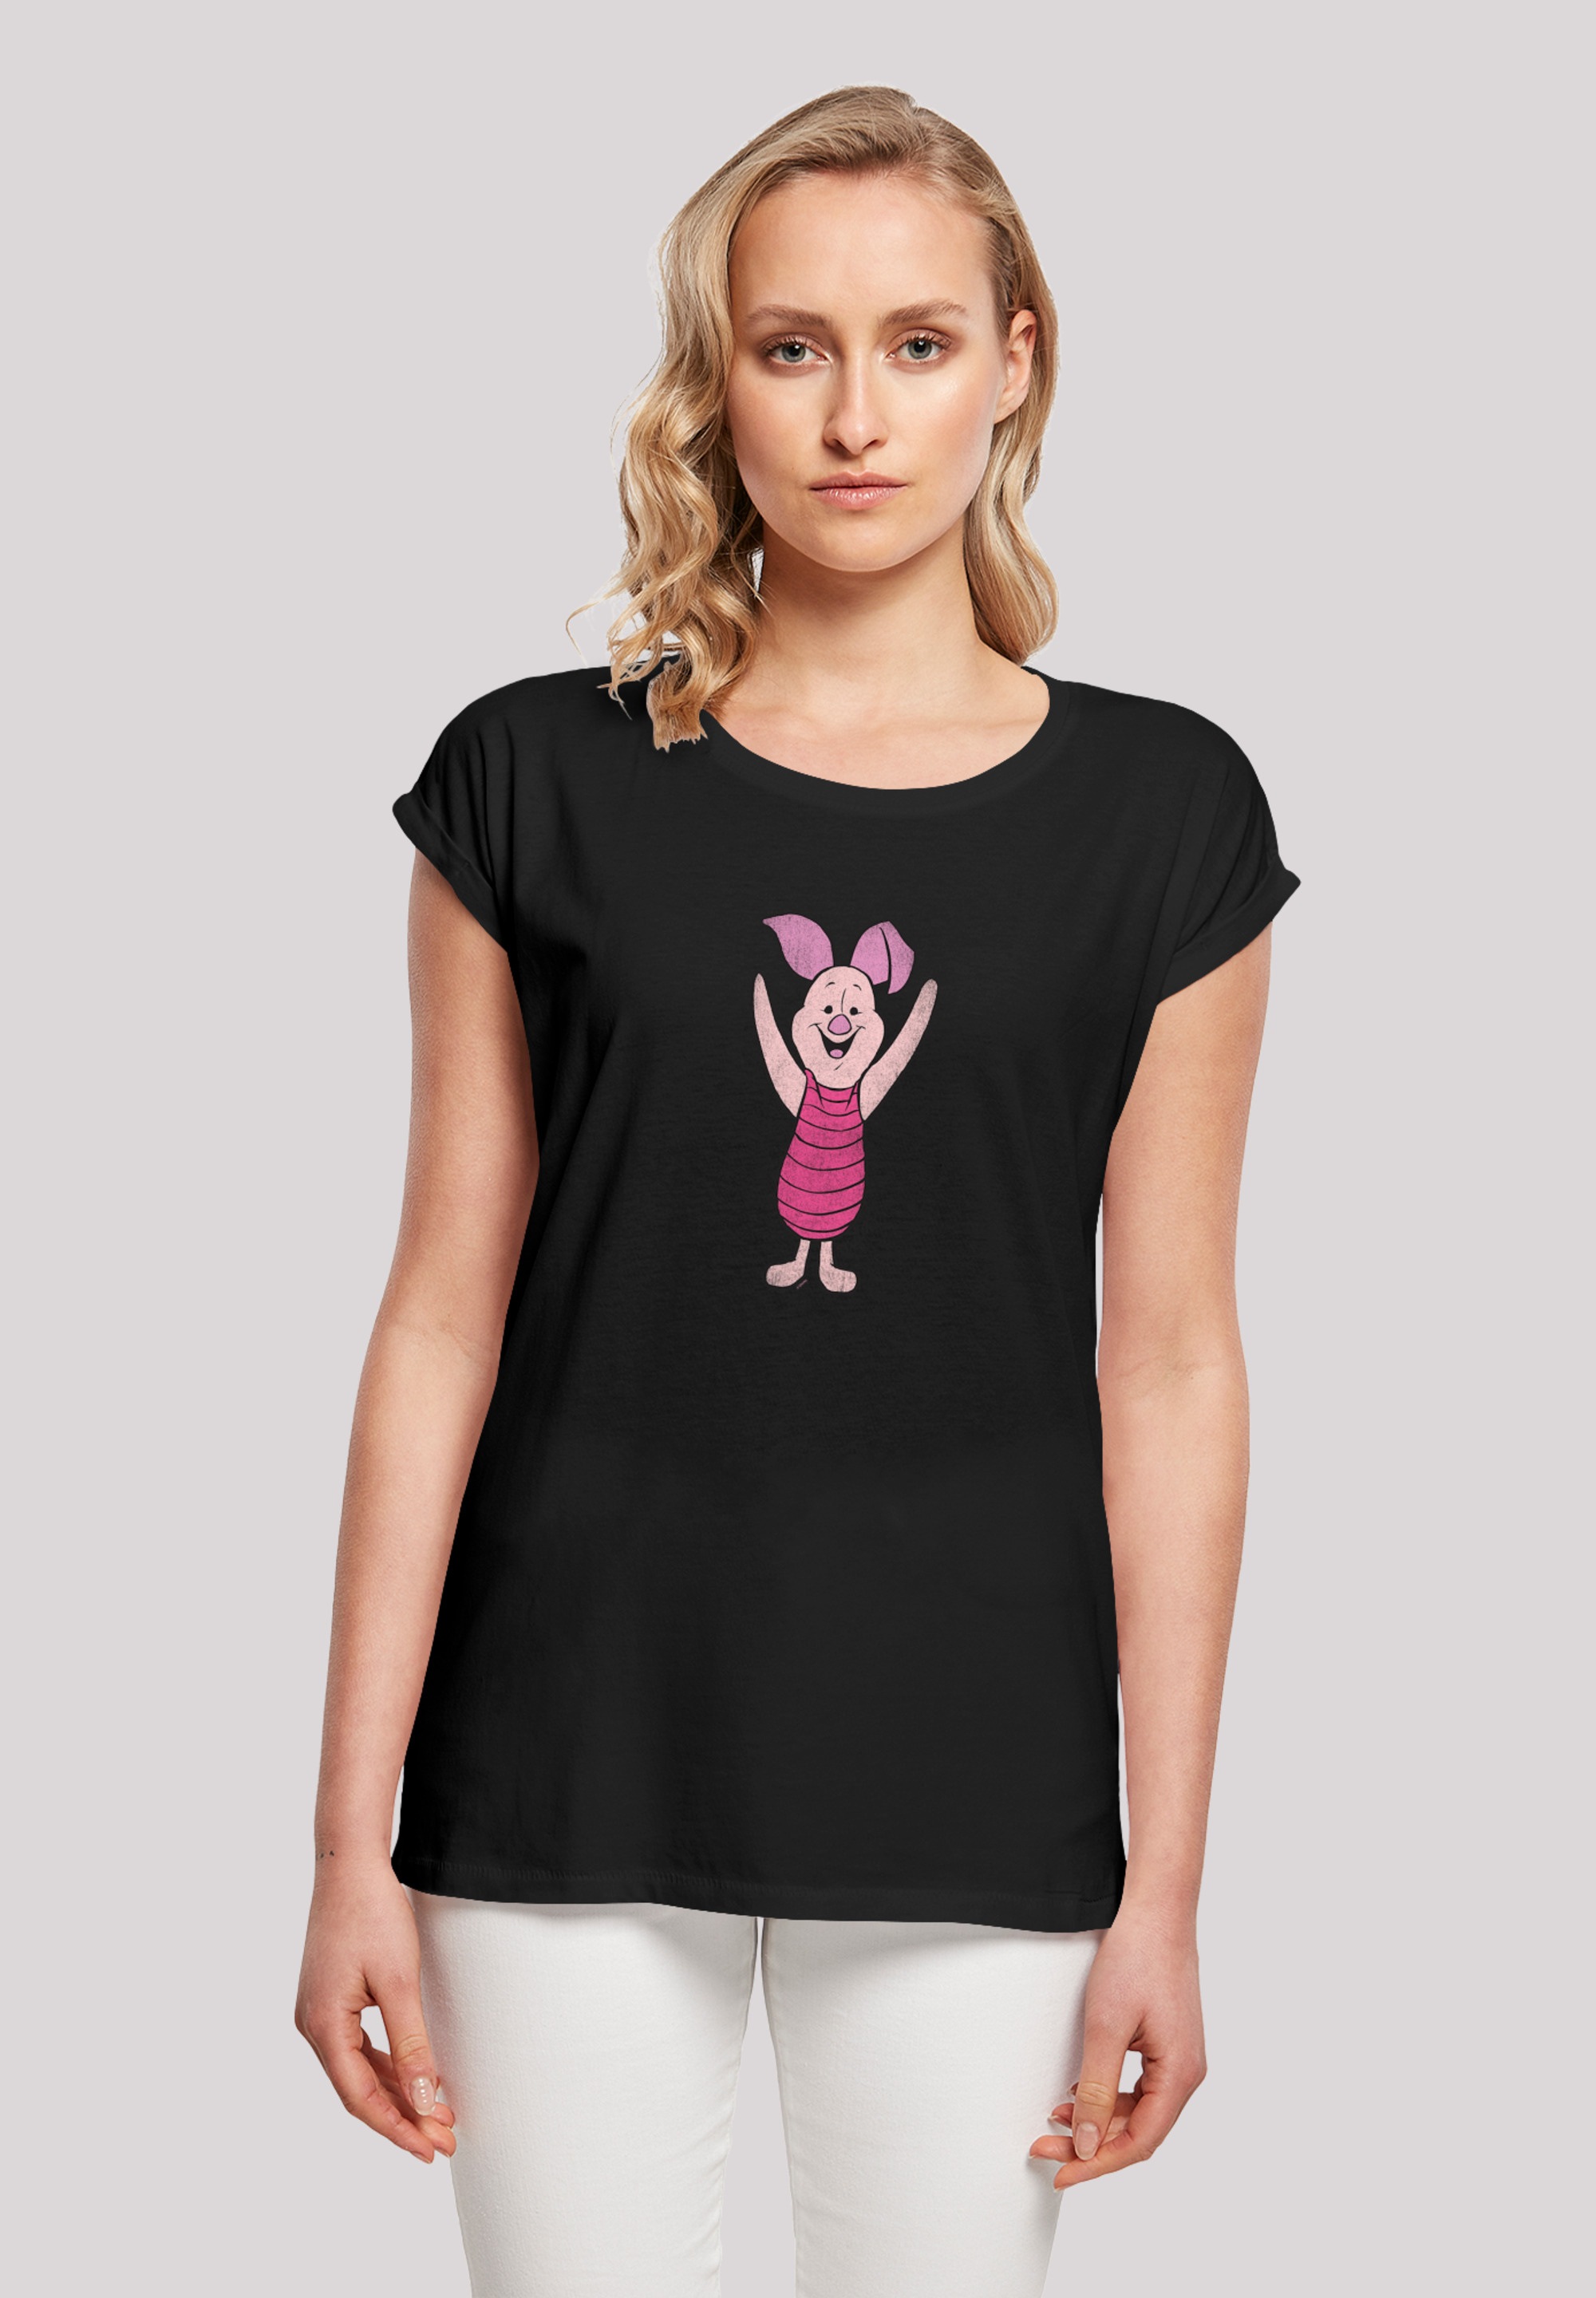 T-Shirt Classic«, online Ferkel Print F4NT4STIC Puuh »Winnie Piglet